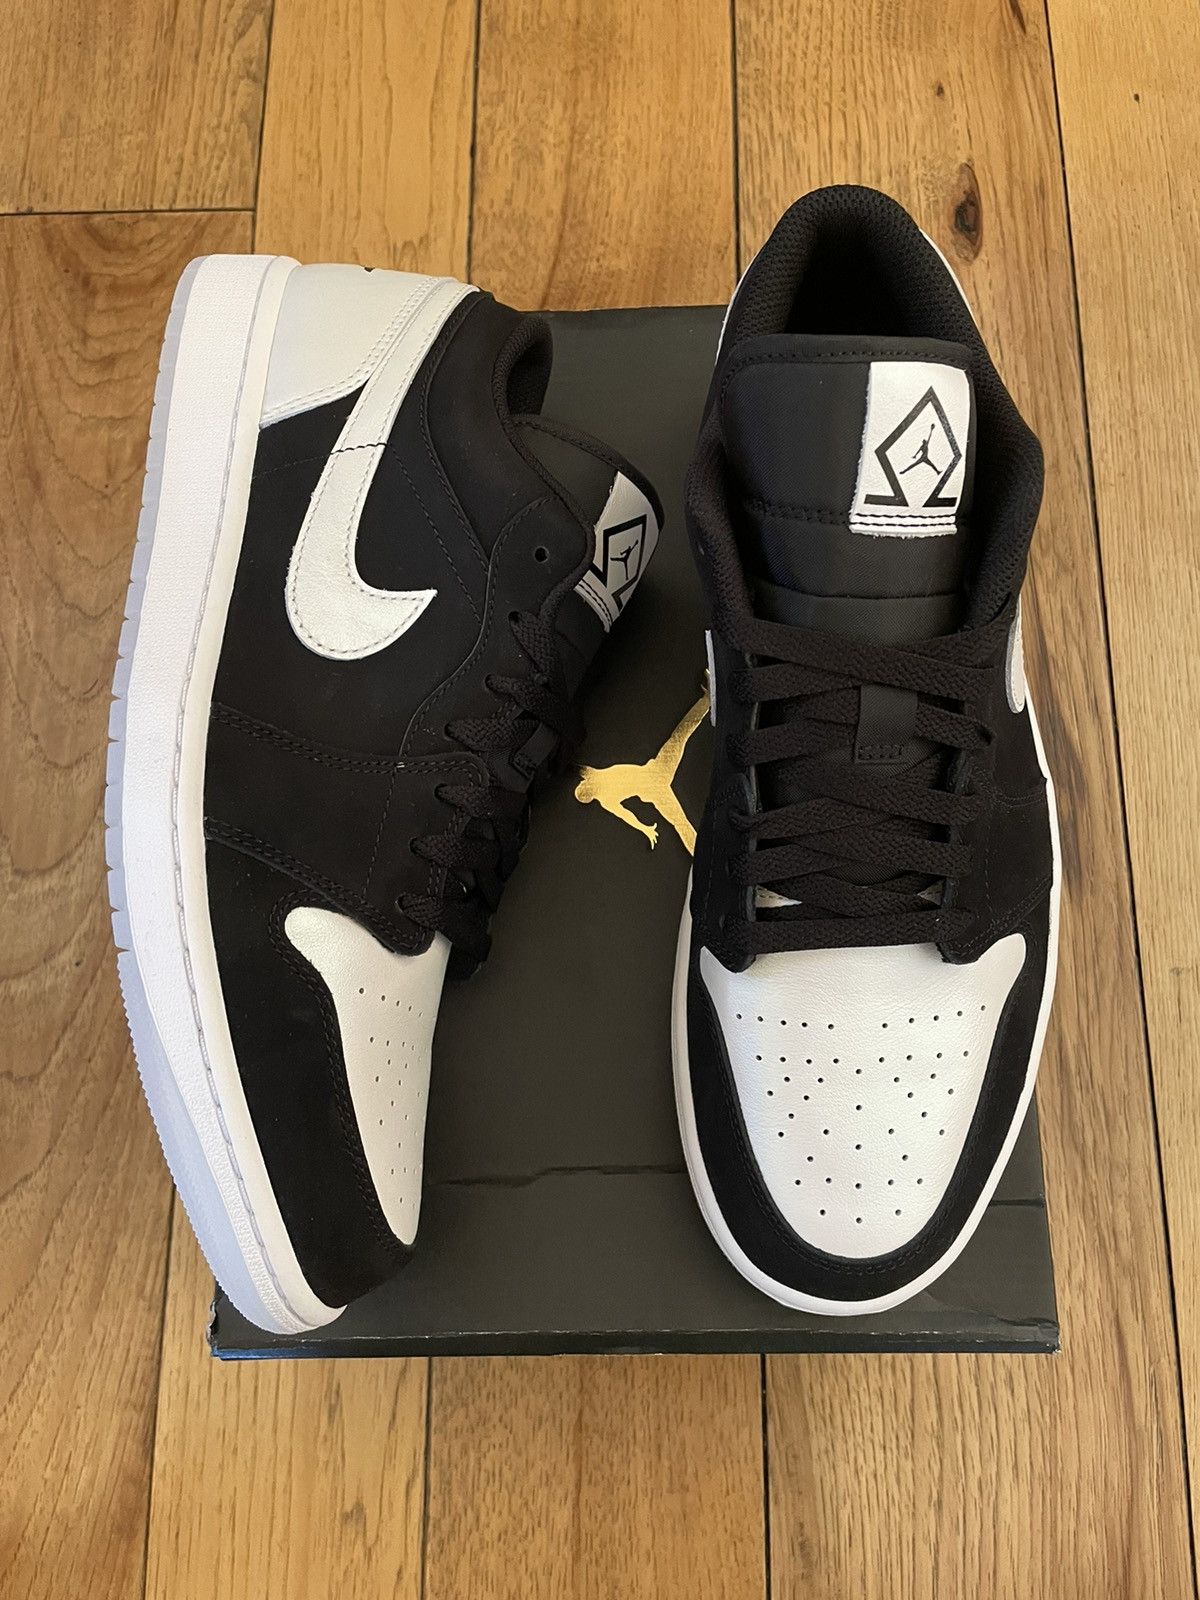 Pre-owned Jordan Nike Air Jordan 1 Low “diamond Shorts” 2022 Shoes In Black